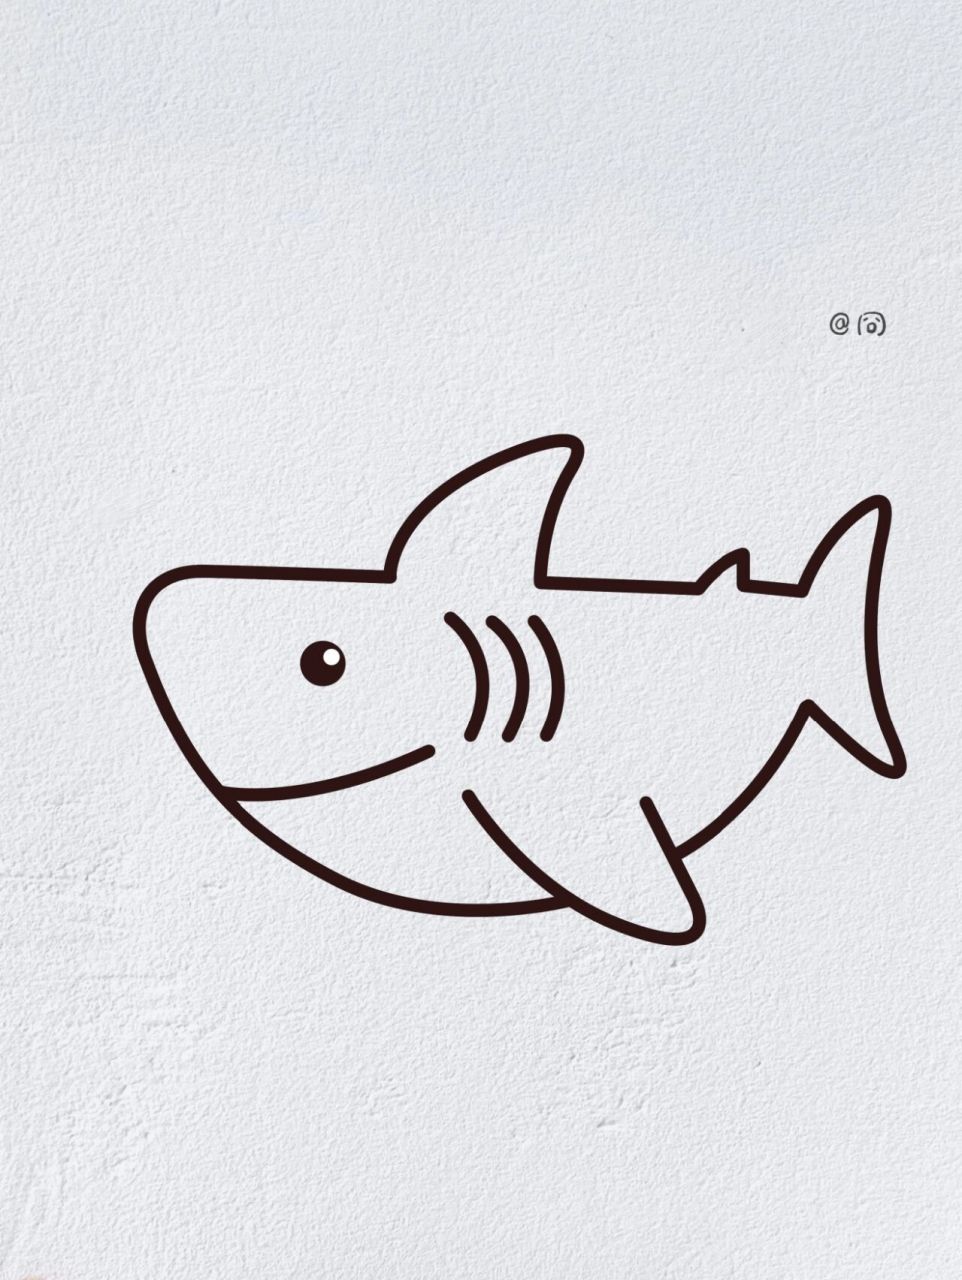 鲨鱼简笔画画法 凶狠图片